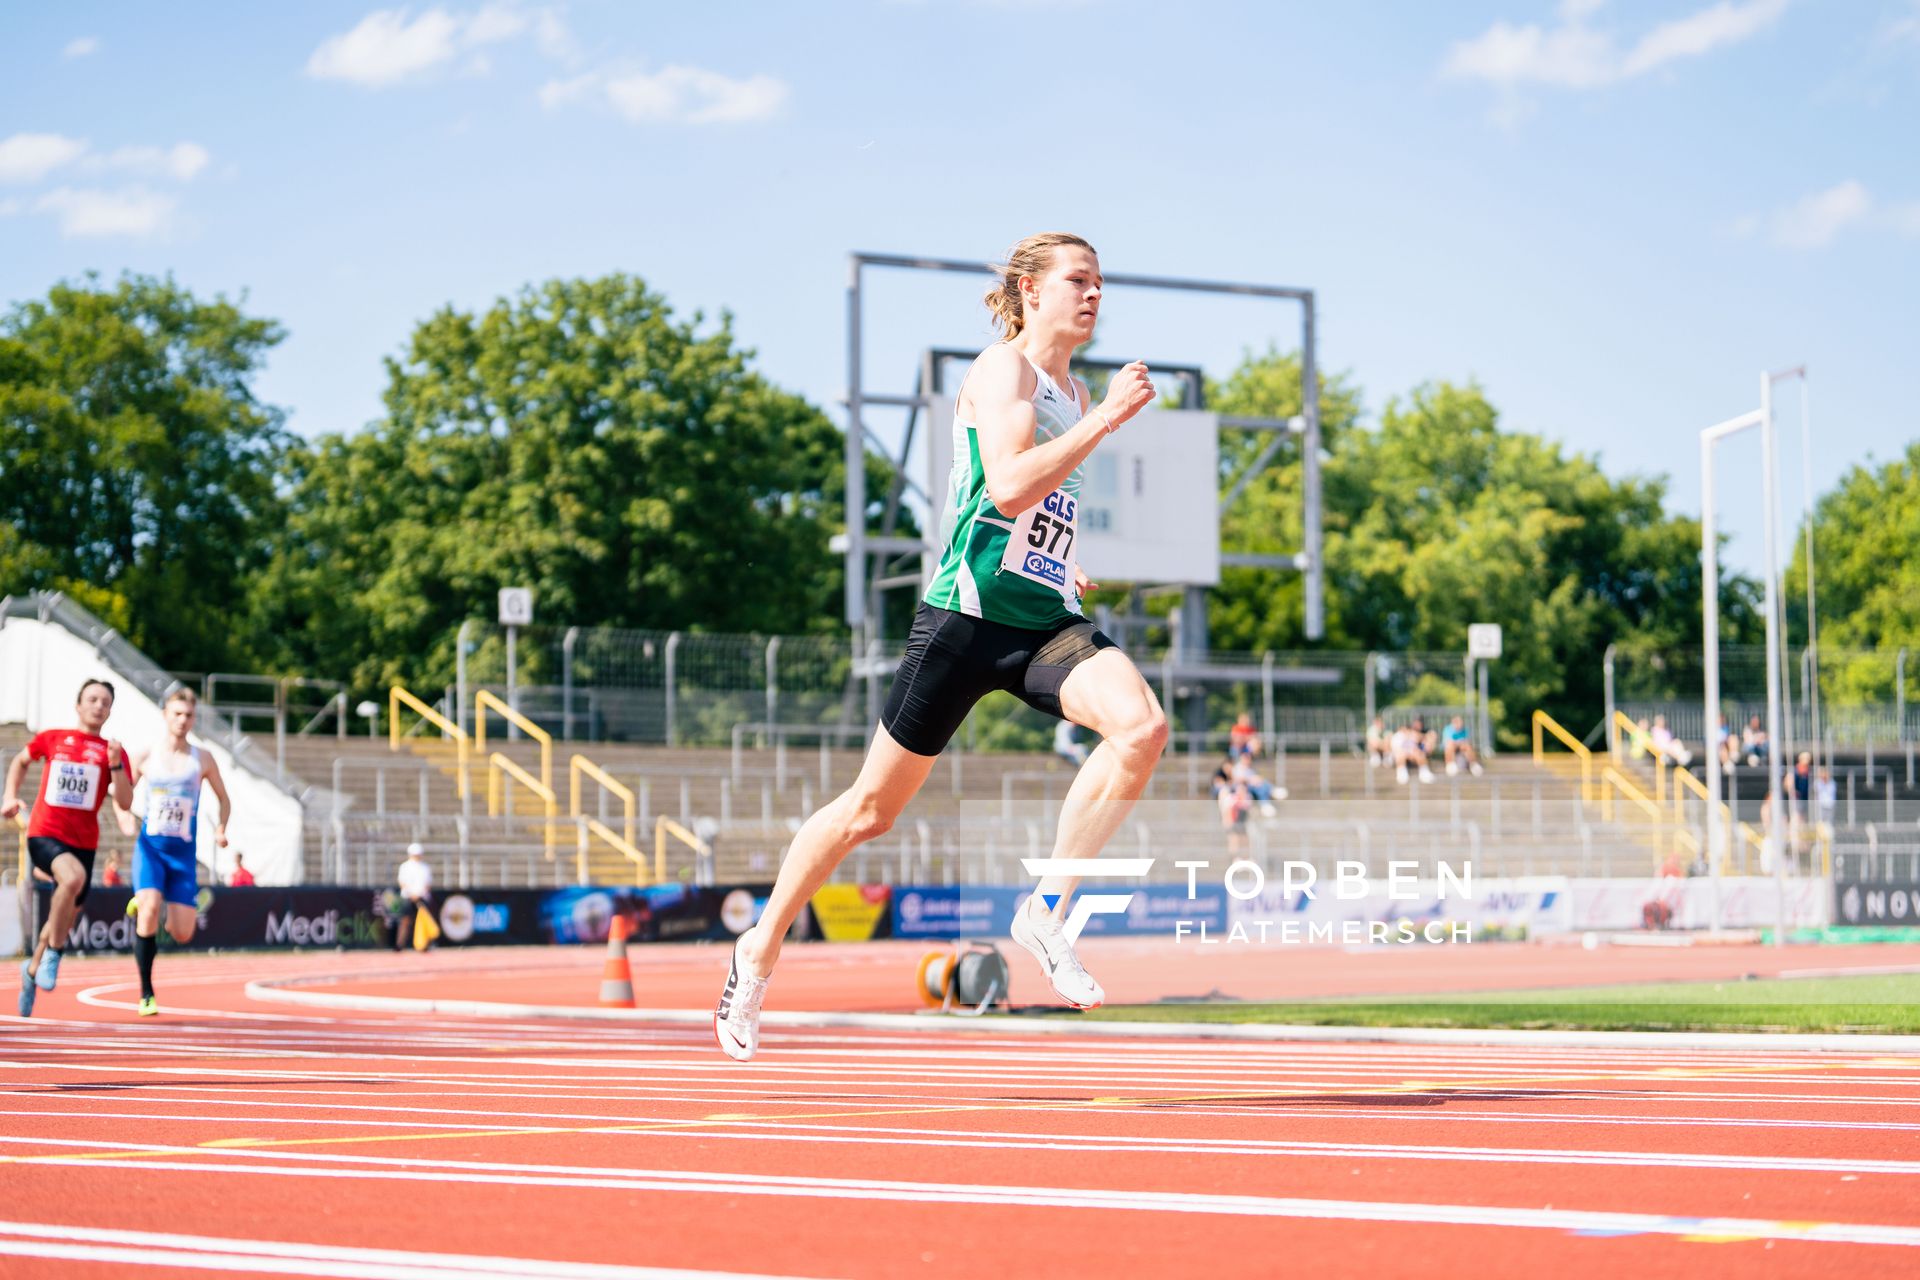 Max Husemann (Eintracht Hildesheim) ueber 400m am 15.07.2022 waehrend den deutschen Leichtathletik-Jugendmeisterschaften 2022 in Ulm